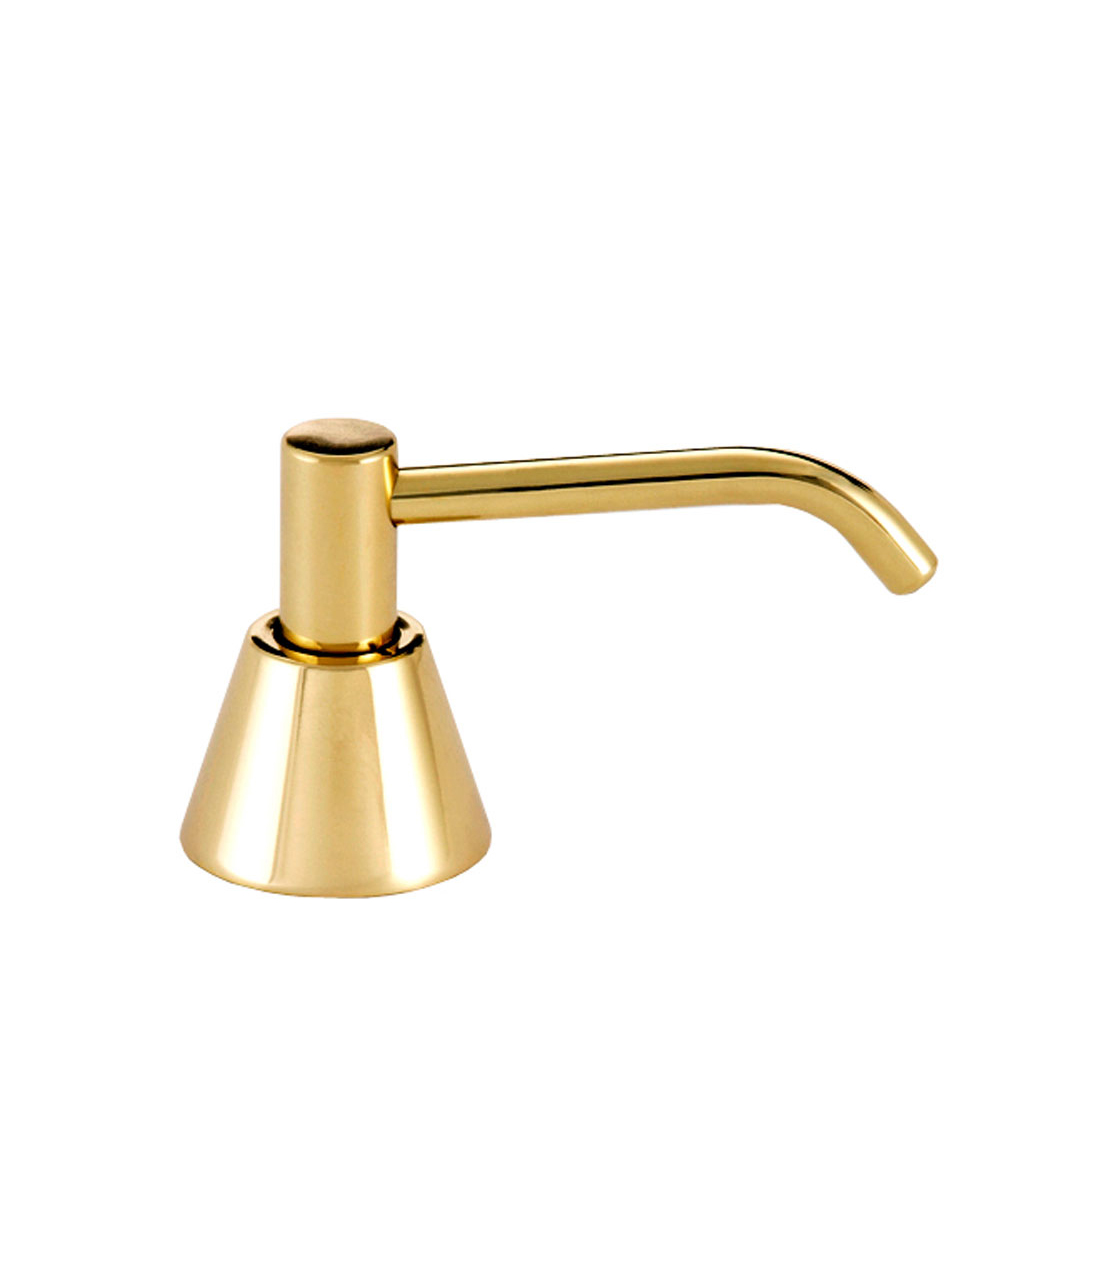 Basin-Mounted Polished Brass Soap Dispenser - (Model #: g-64lb-us-3) main image